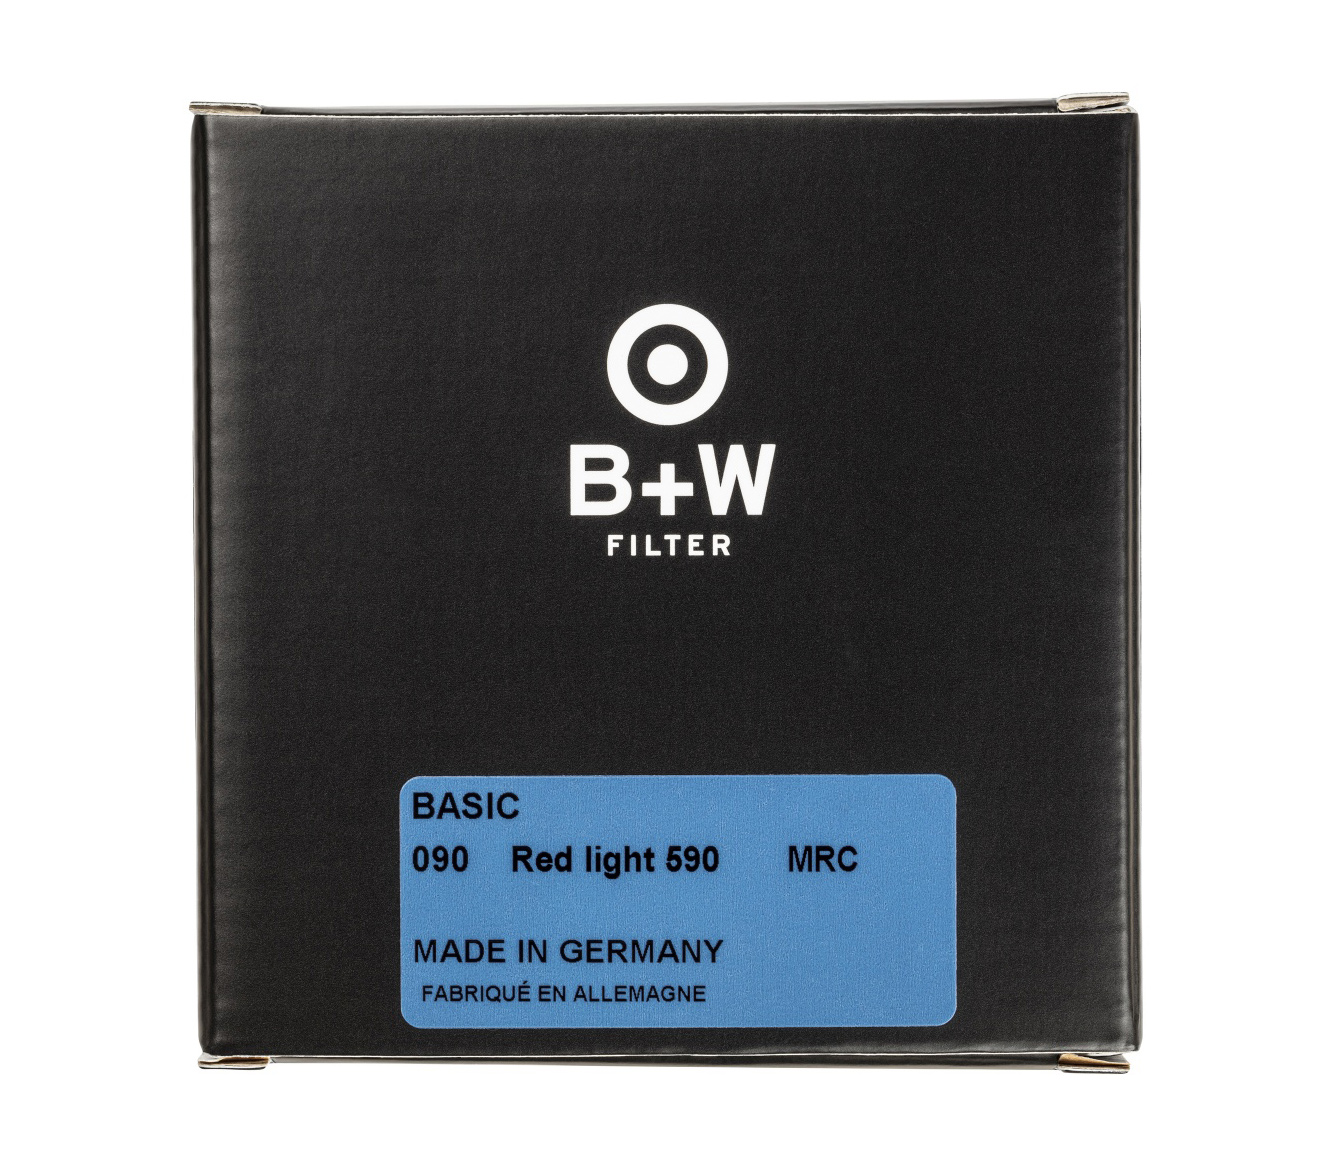 BASIC 090 Red light MRC 590 77mm